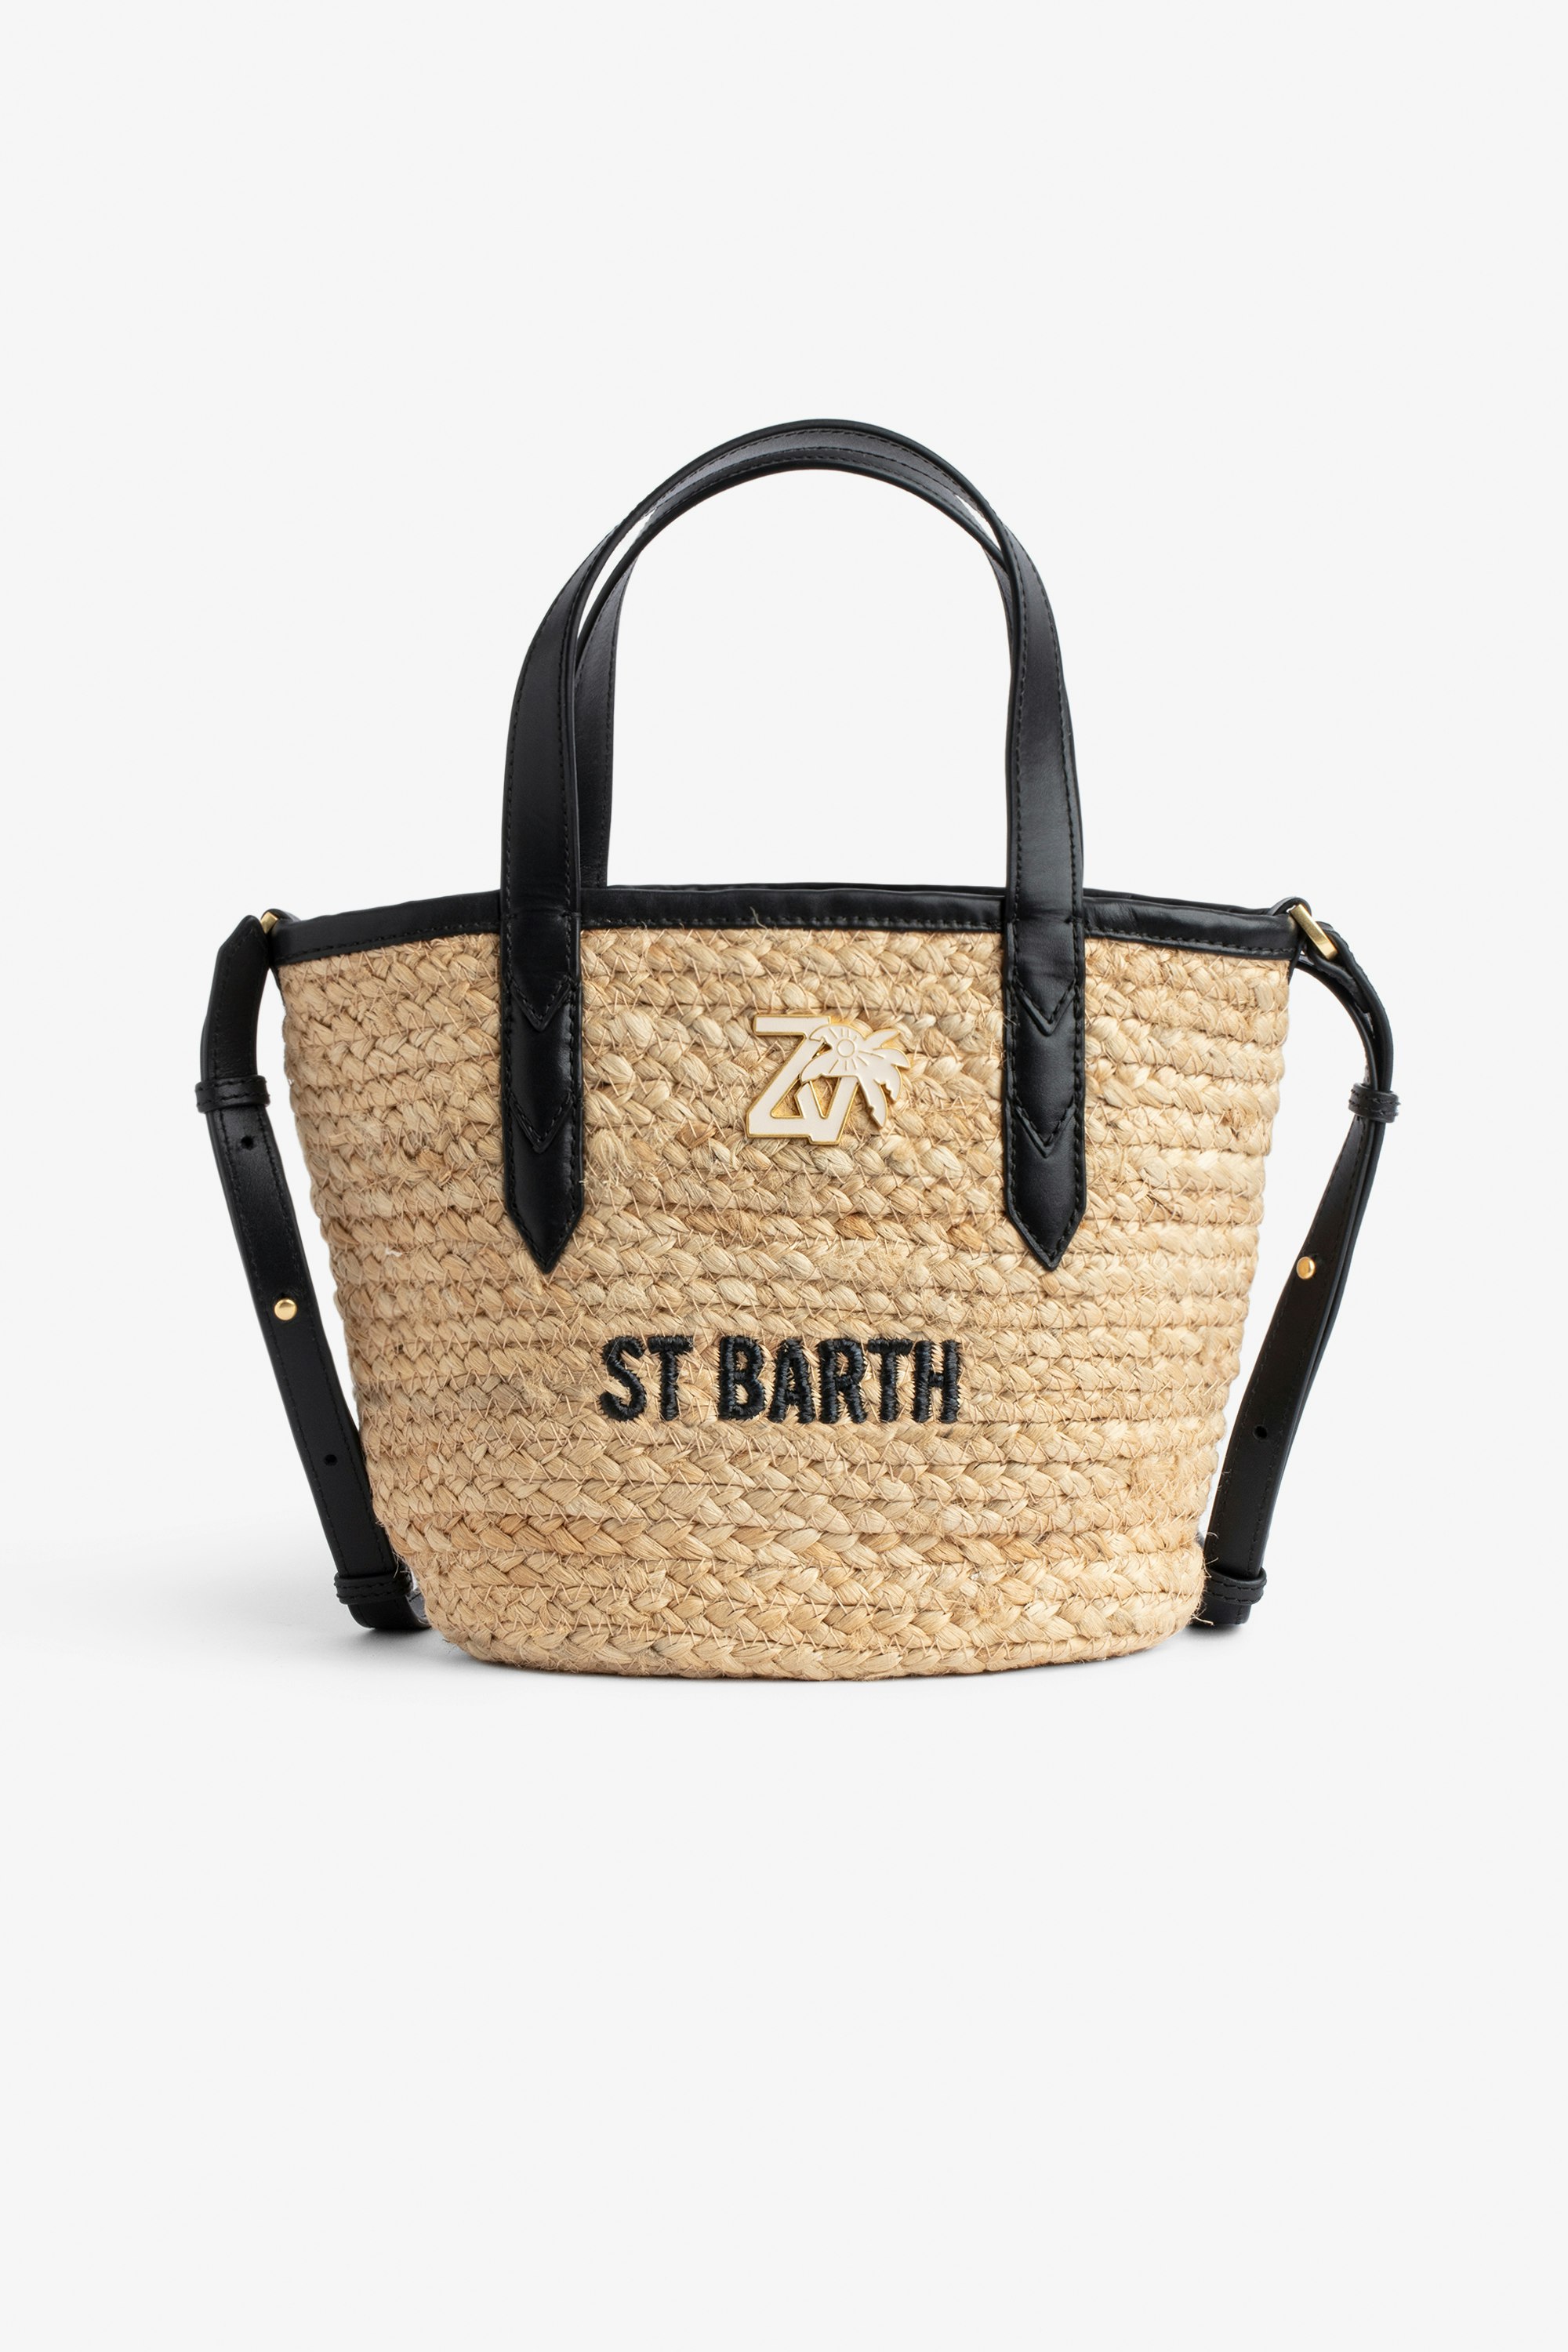 Borsa Le Baby Beach Borsa in paglia con tracolla in pelle nera, con ricamo "St Barth" e impreziosita da un charm ZV - Donna